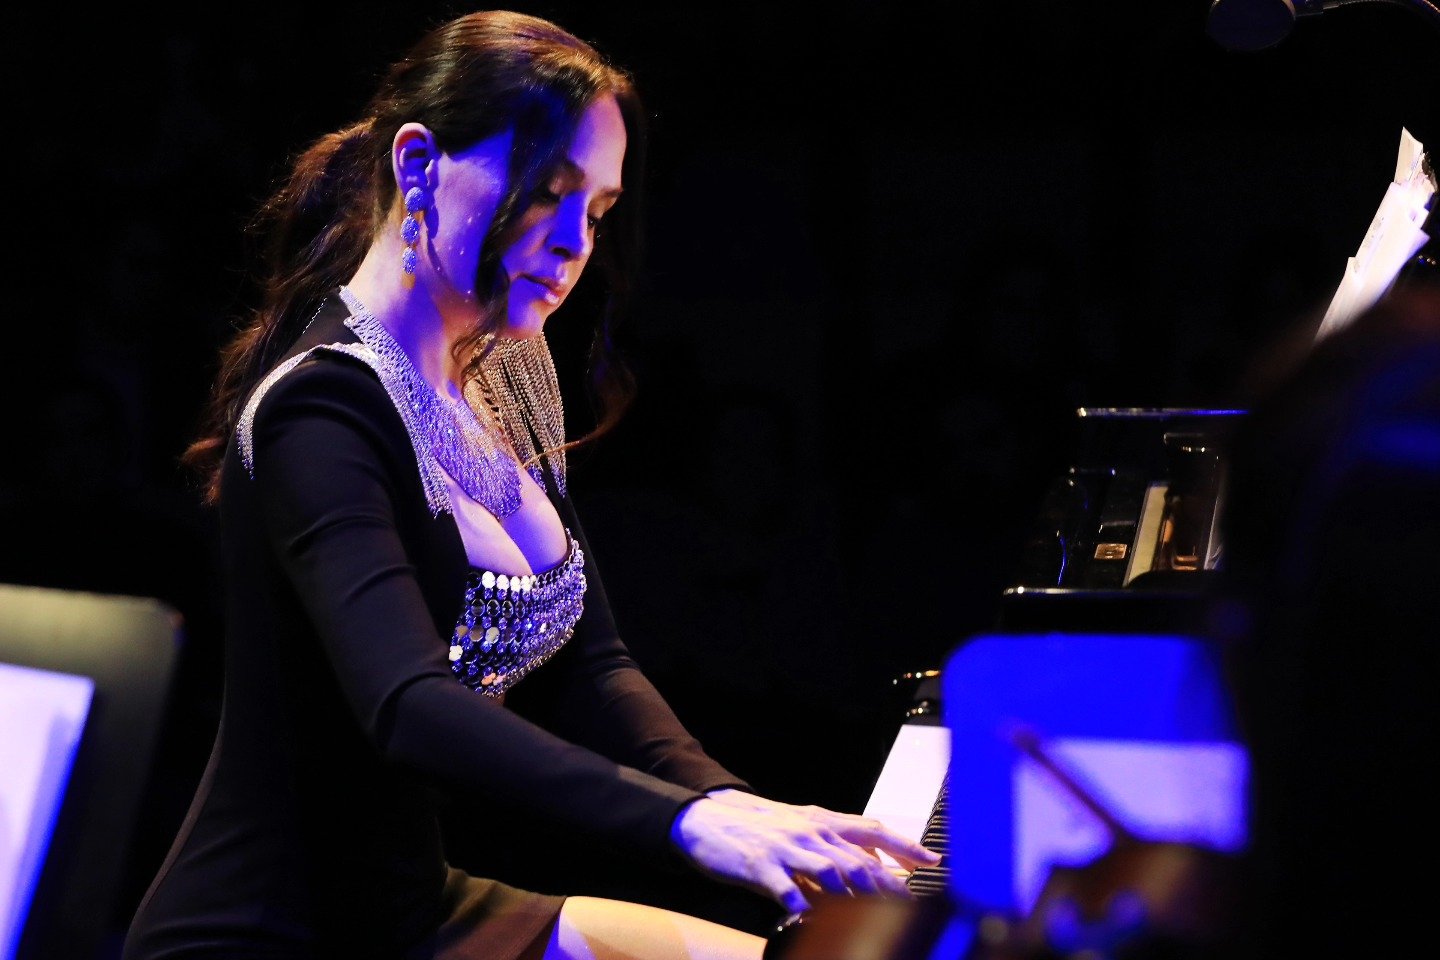 В Баку выступила cамая красивая пианистка в мире Лола Астанова (ФОТО)